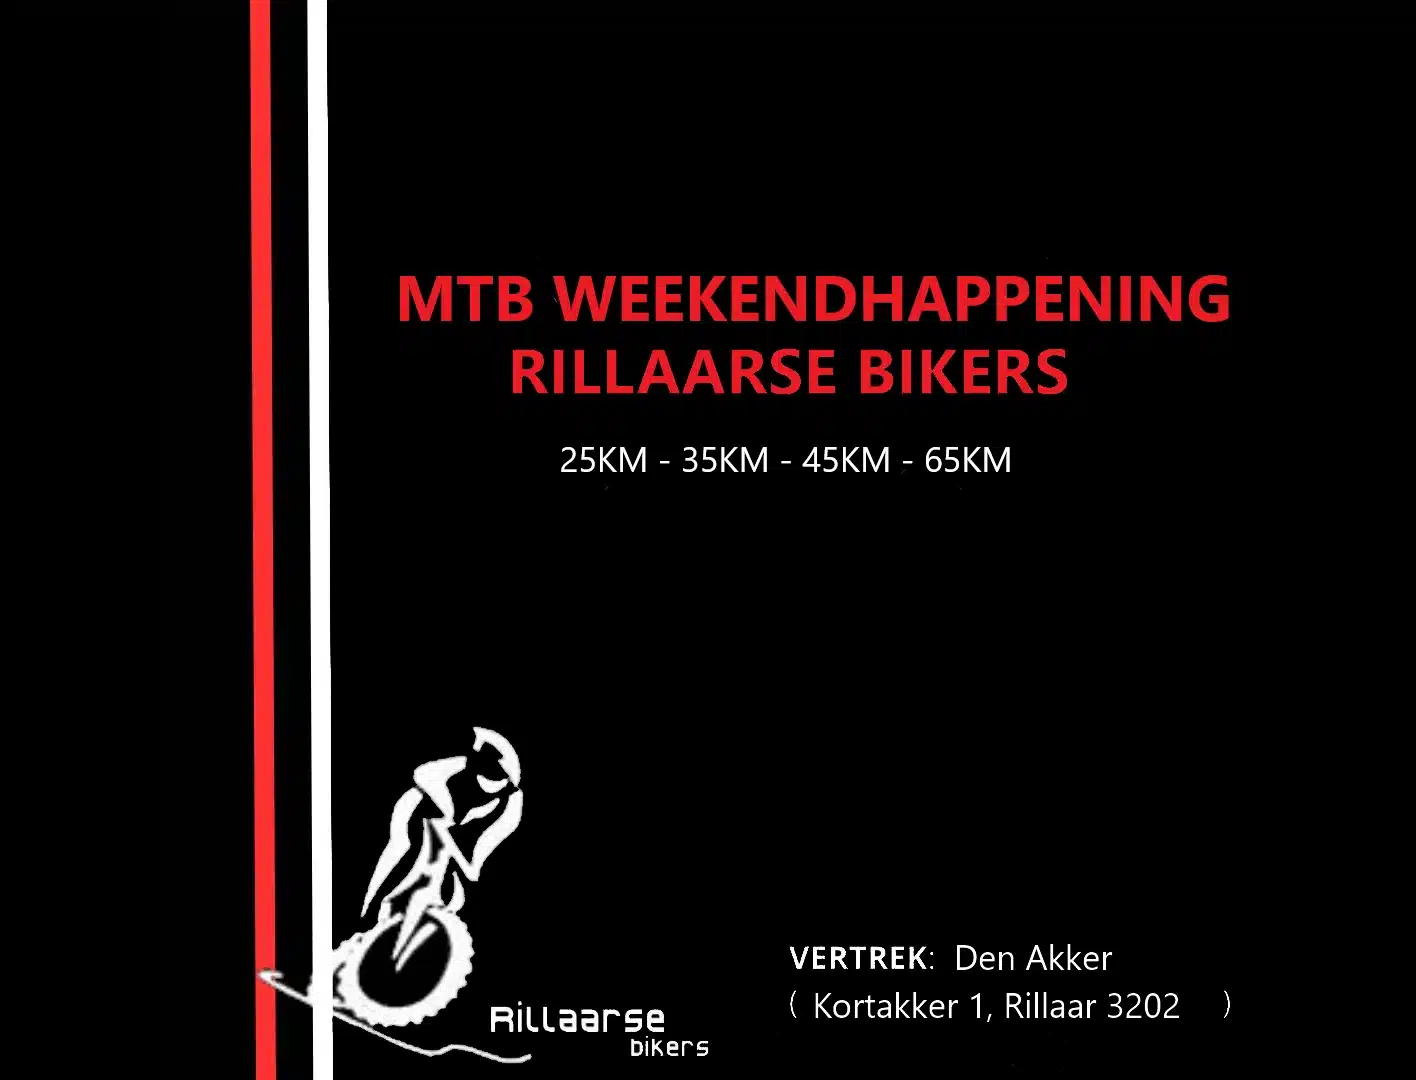 23 MTB Weekendhappening Rillaarse Bikers